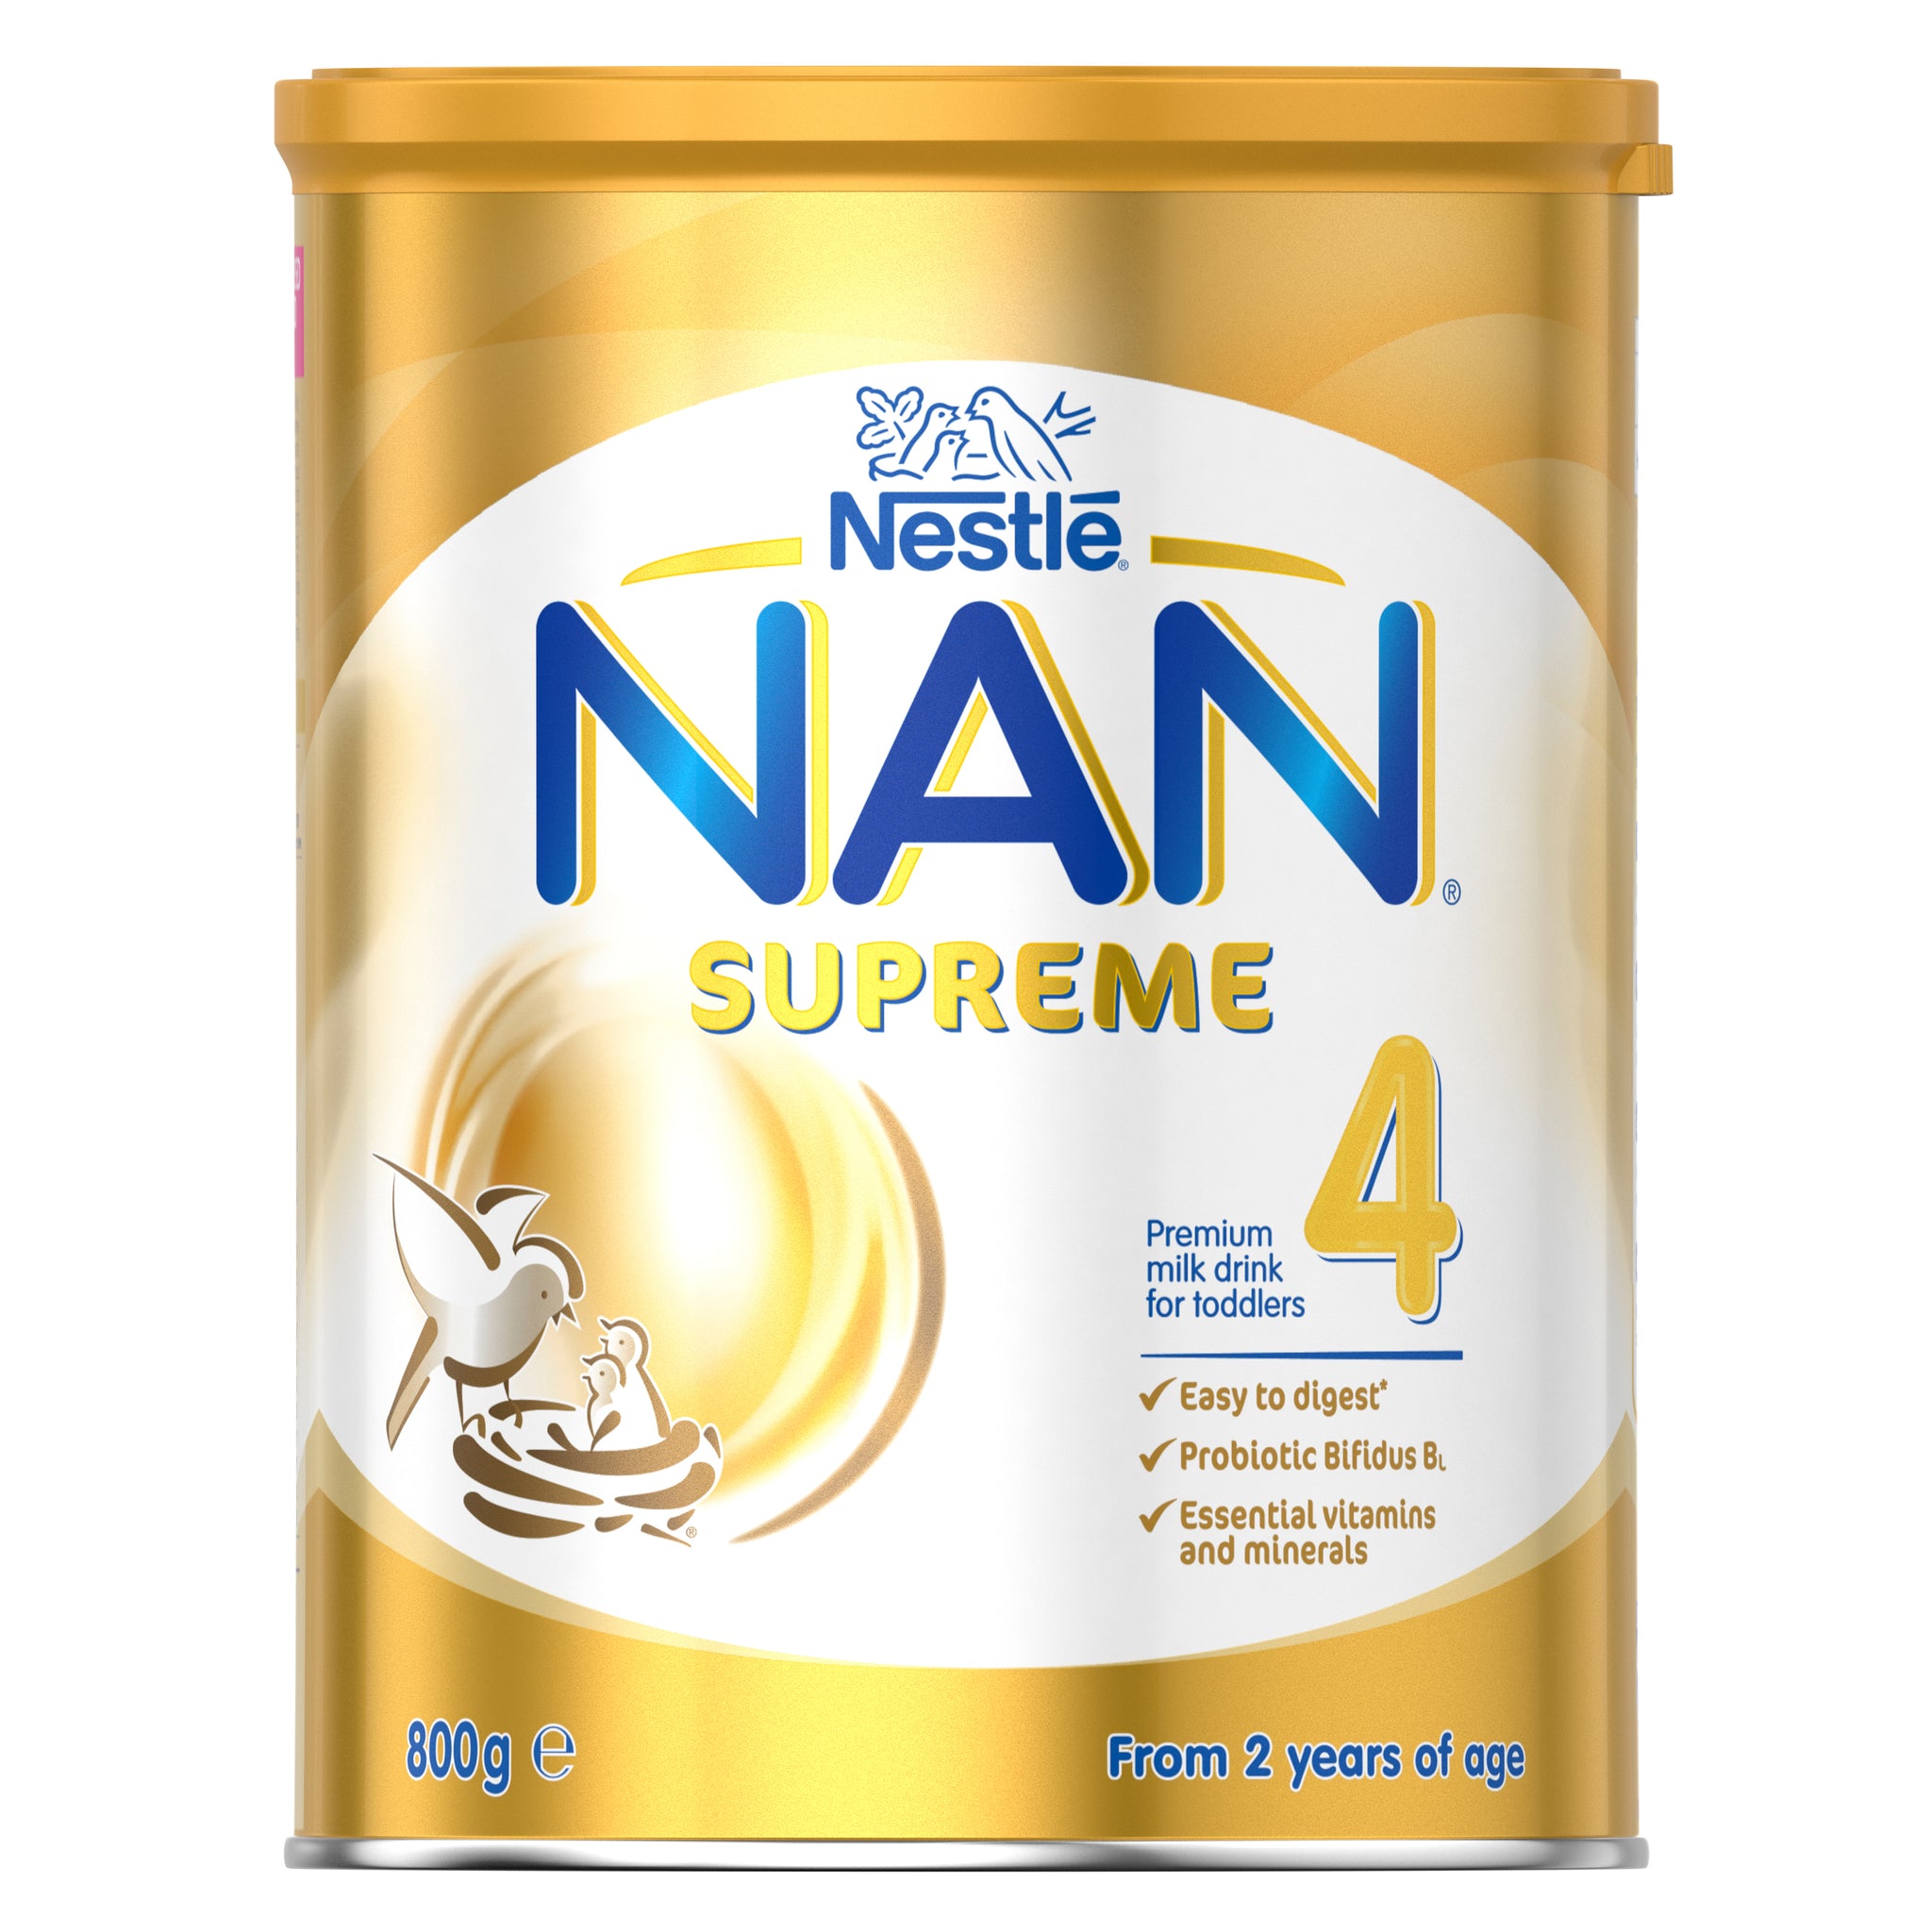 NAN Supreme 4 - 800g | Nestlé Baby Store